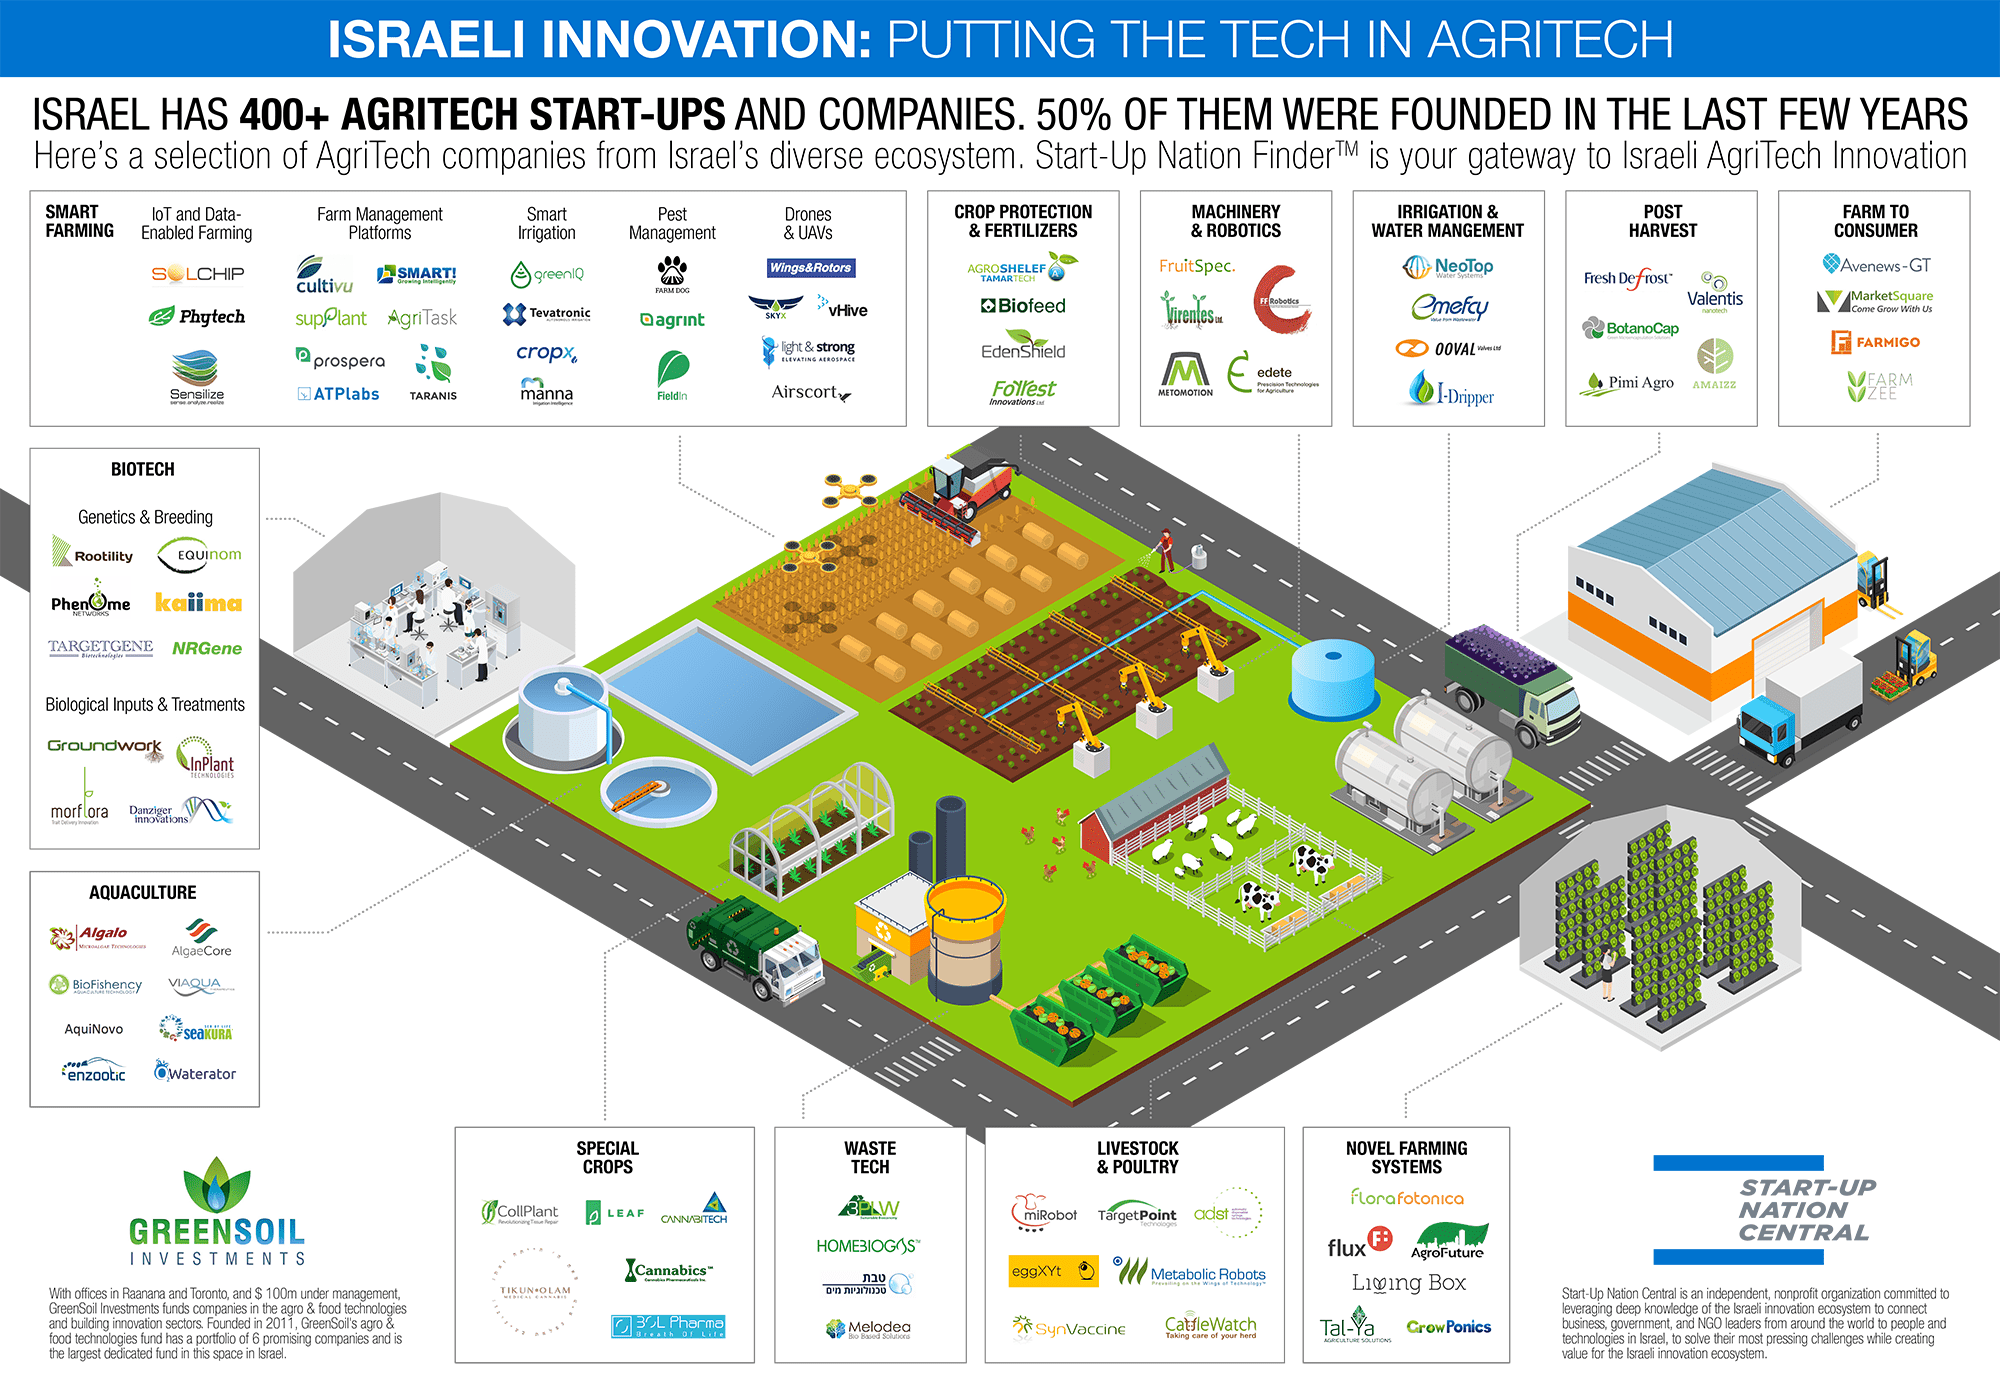 Khởi nghiệp nông nghiệp đang bùng nổ tại Israel. Nước này hiện có trên 400 startup nông nghiệp, bao gồm cả nuôi trồng thủy sản.